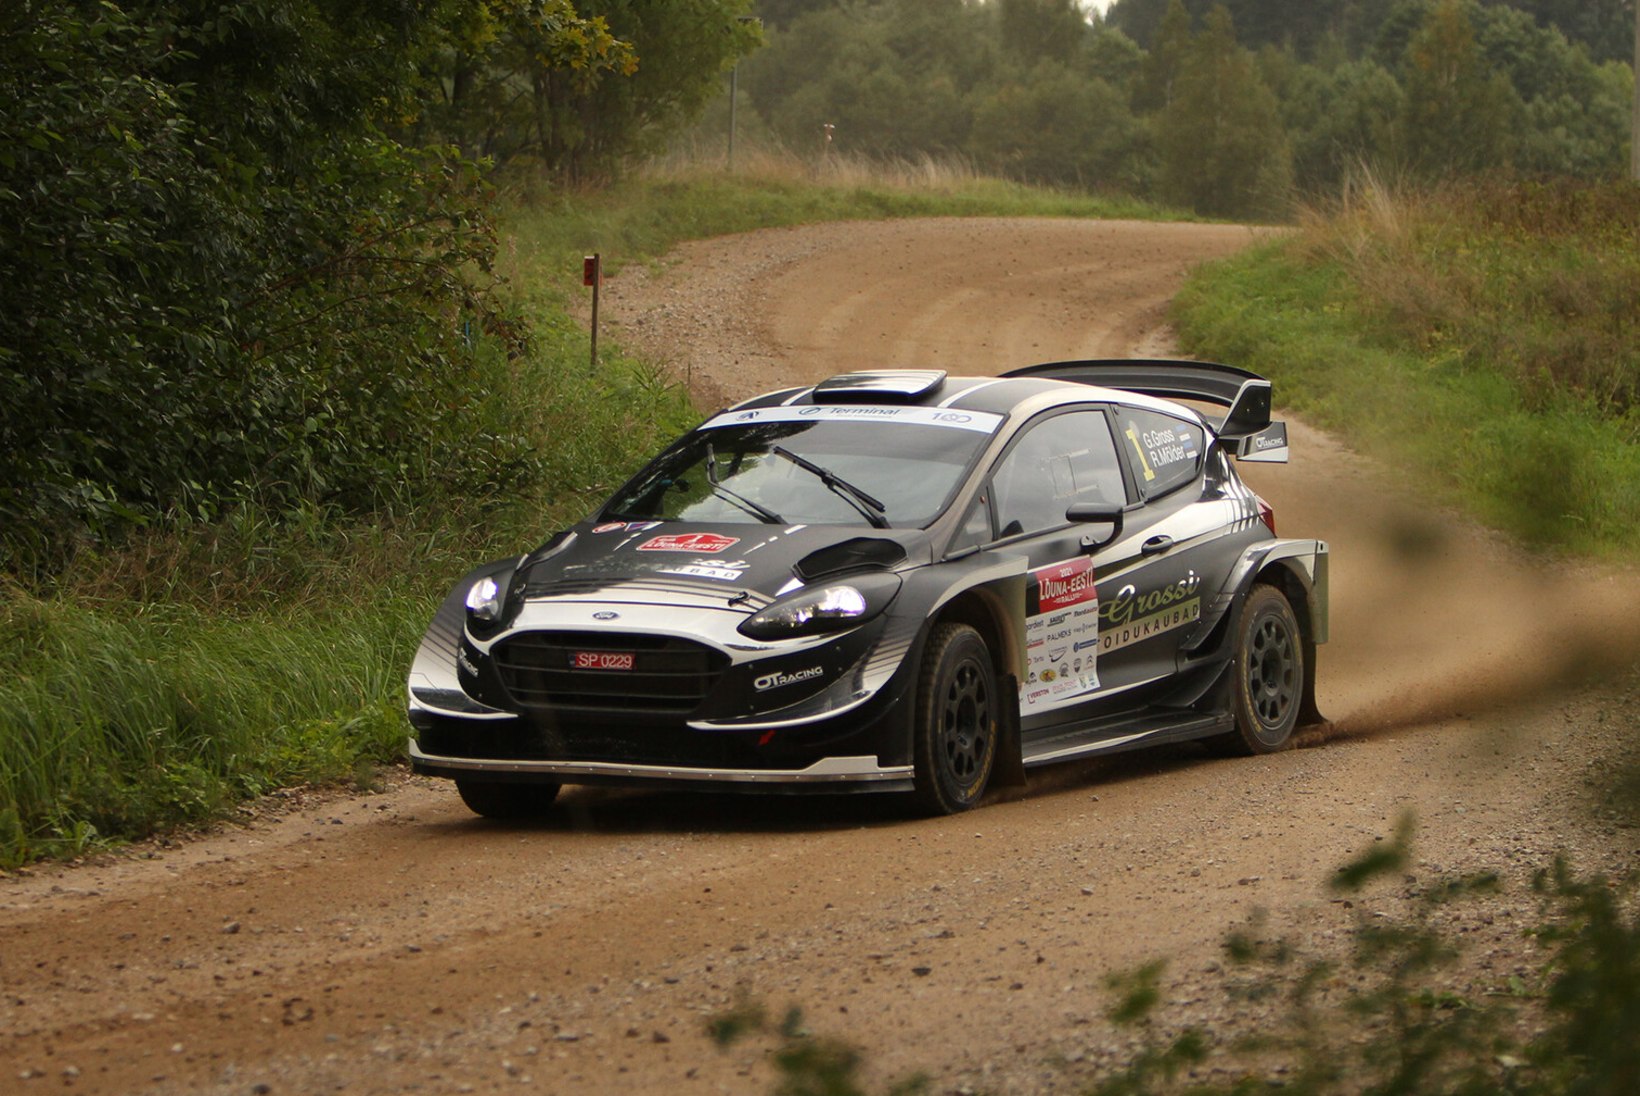 FOTOD | WRC-autol kihutanud Gross-Mõlderile Lõuna-Eestis vastast ei leidunud